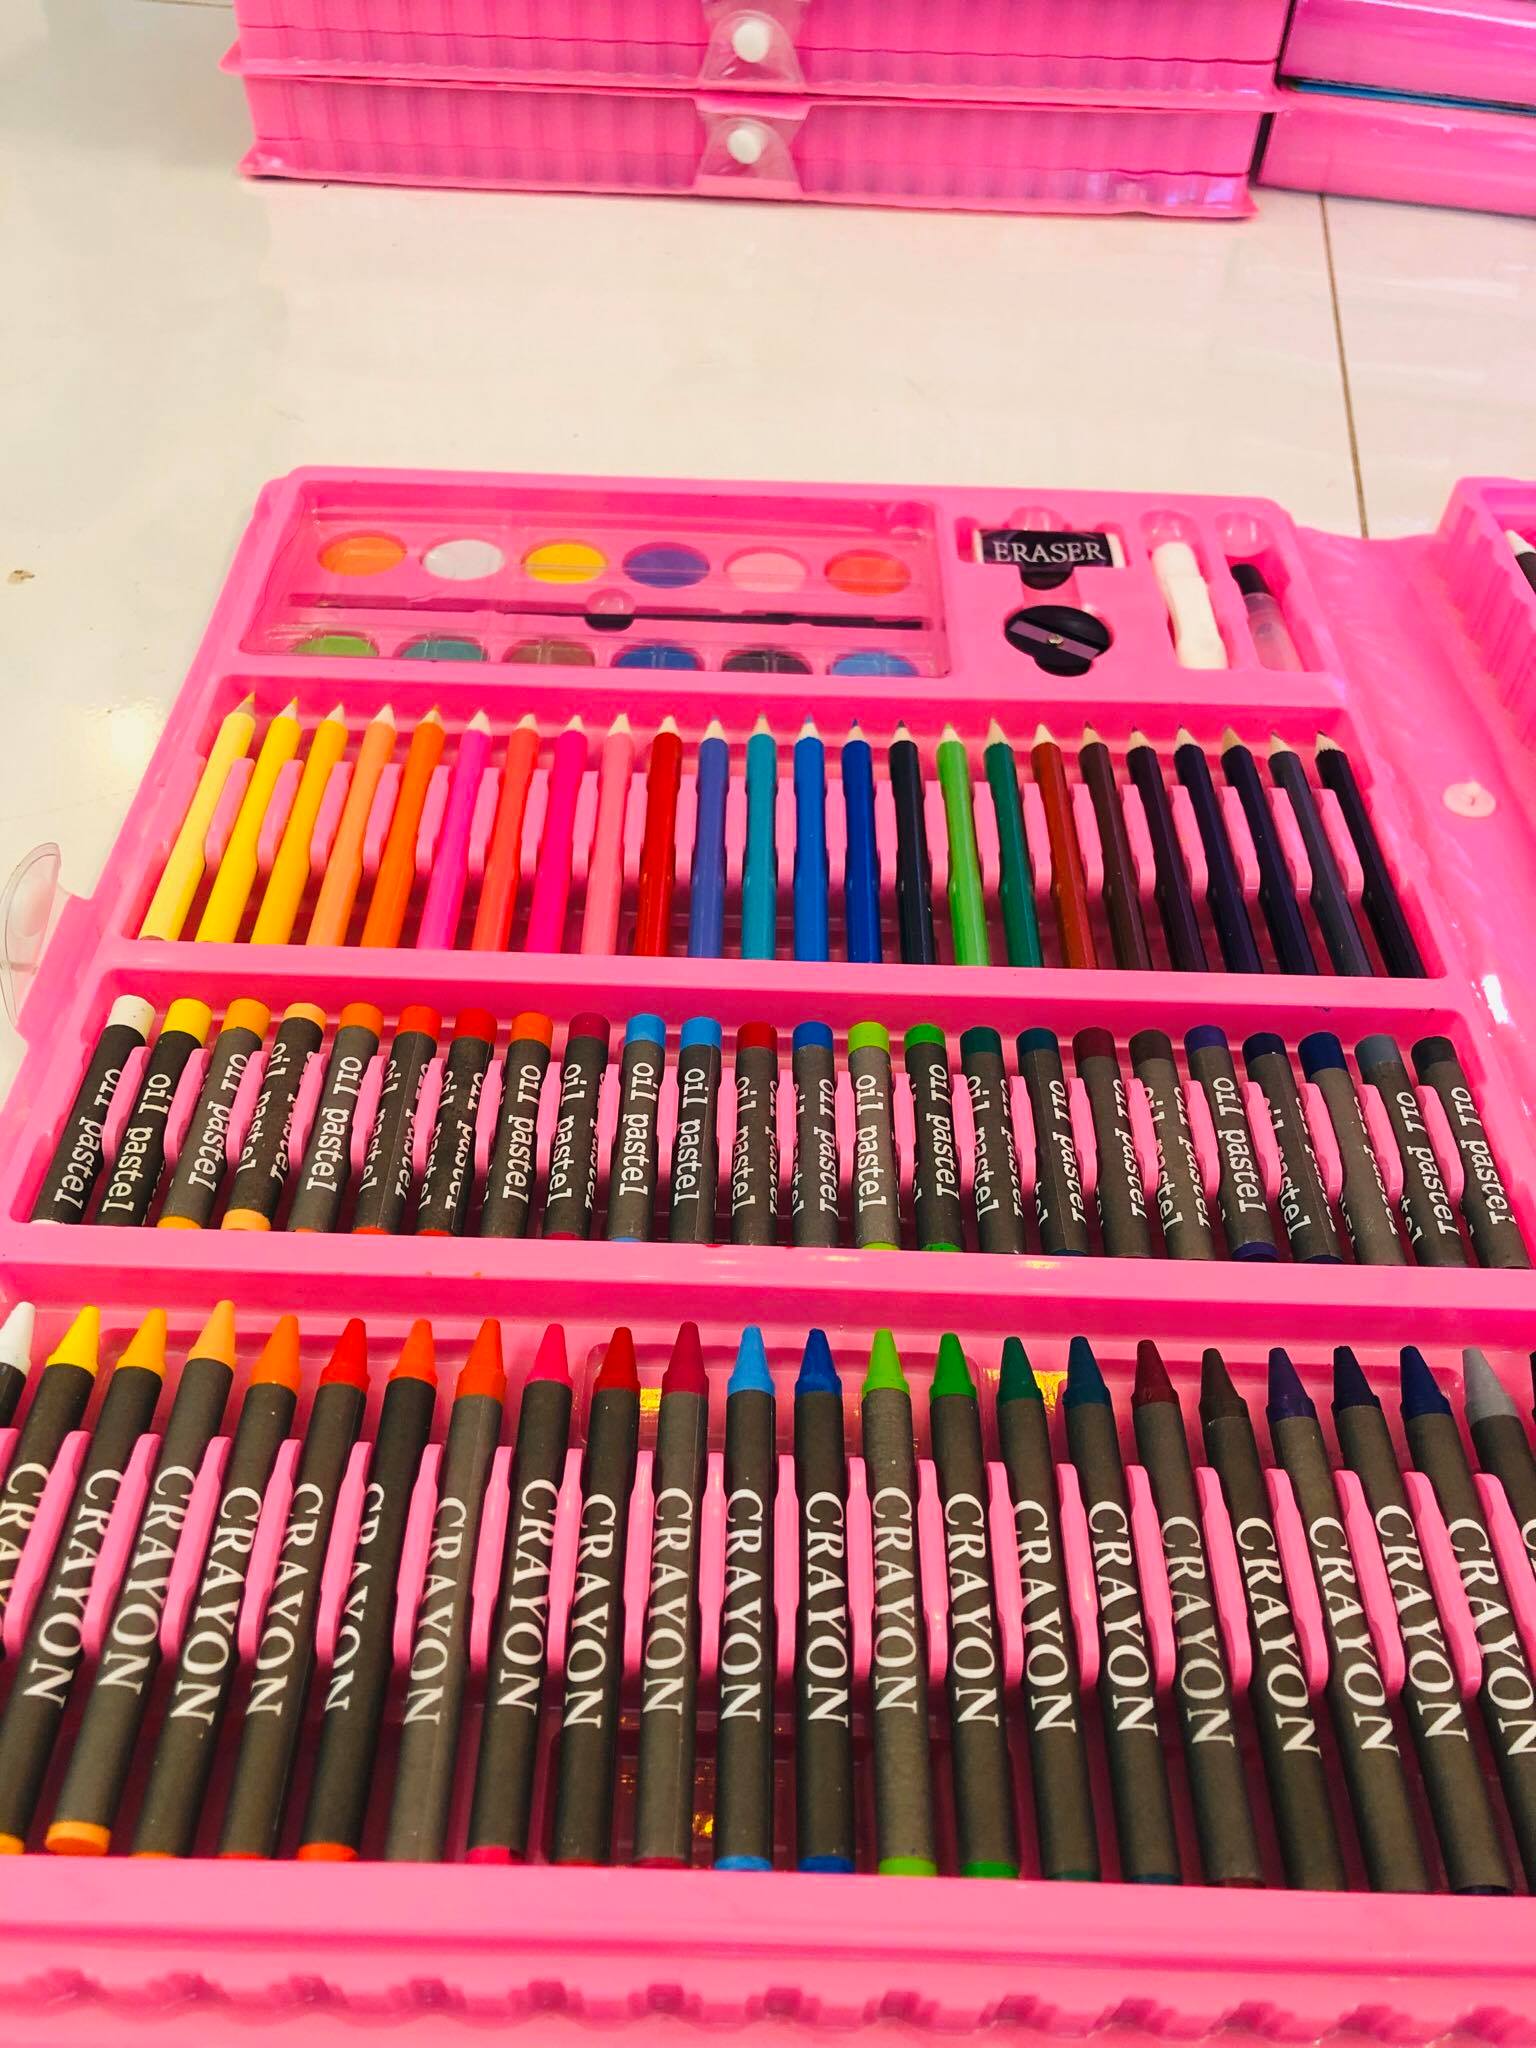 ชุดระบายสีเซ็ทใหญ่ 168 ชิ้นสีชมพู แถมสมุดภาพระบายสีฟรี1เล่มฟรีสี สีไม้ สีน้ำ สีเทียน ดินสอ ยางลบ  #เครื่องเขียน     สี